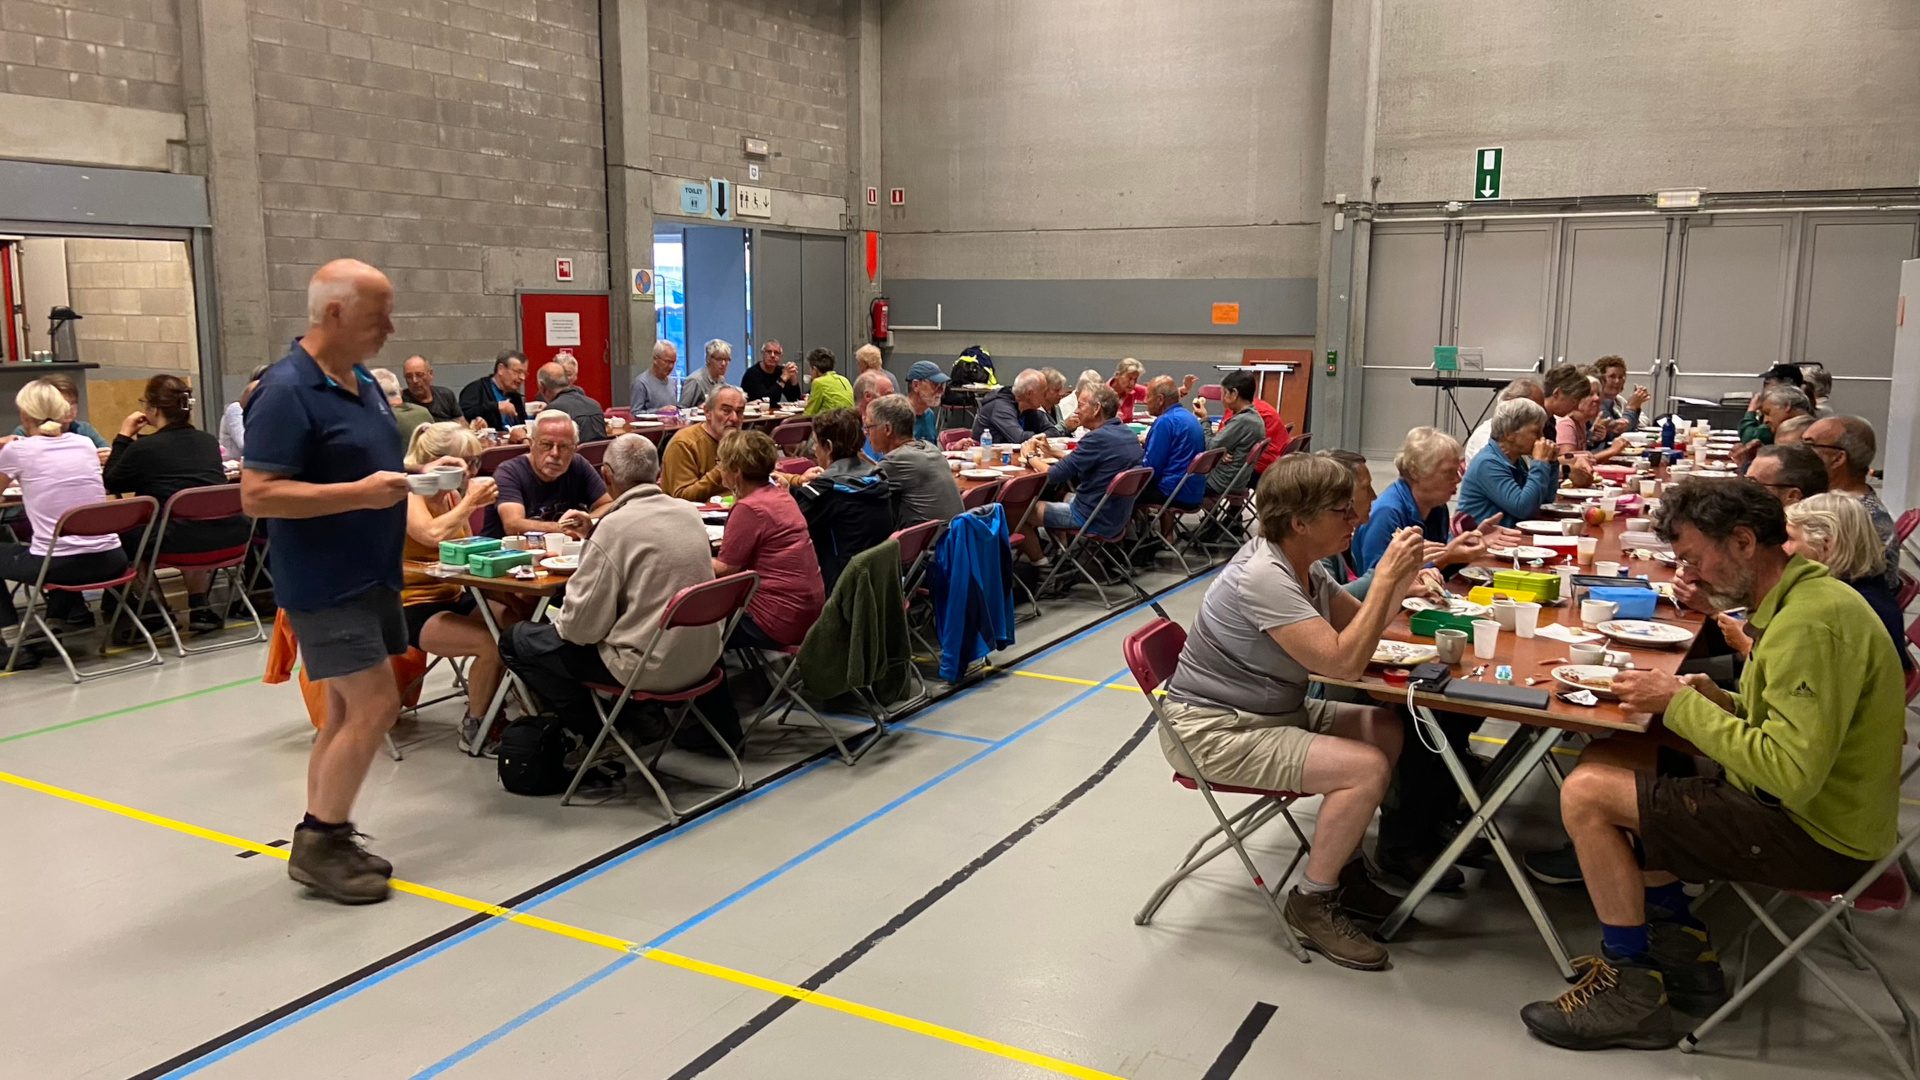 Stevig ontbijt na overnachting in sportzaal De Mast in Torhout.